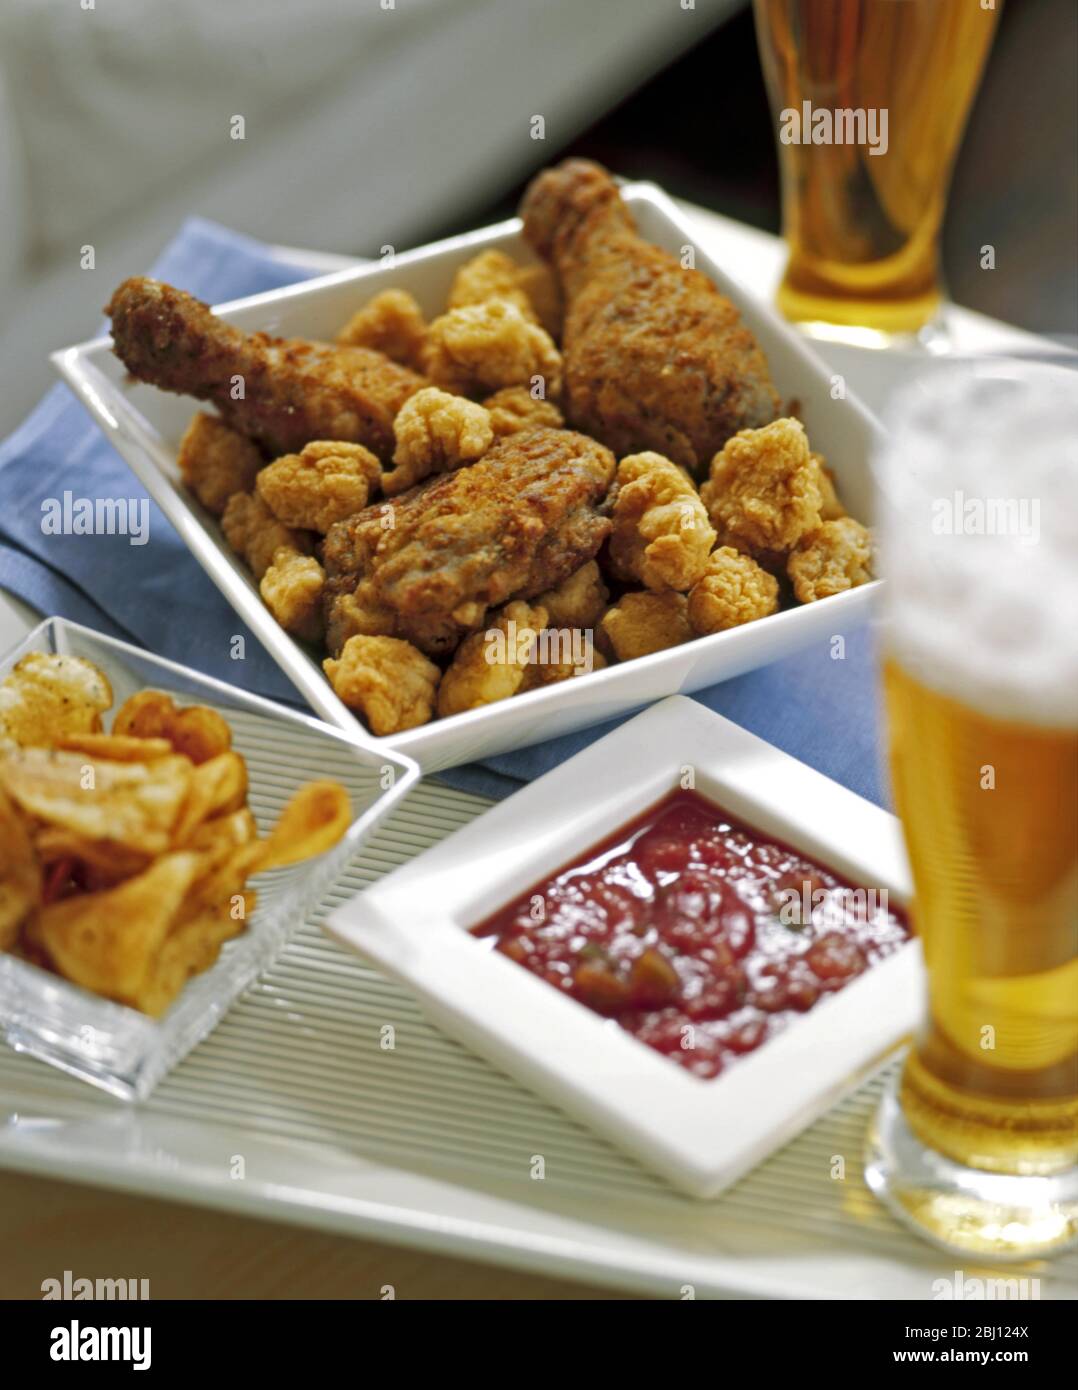 Repas décontracté de poulet frit, chips, salsa de tomate et bière - Banque D'Images